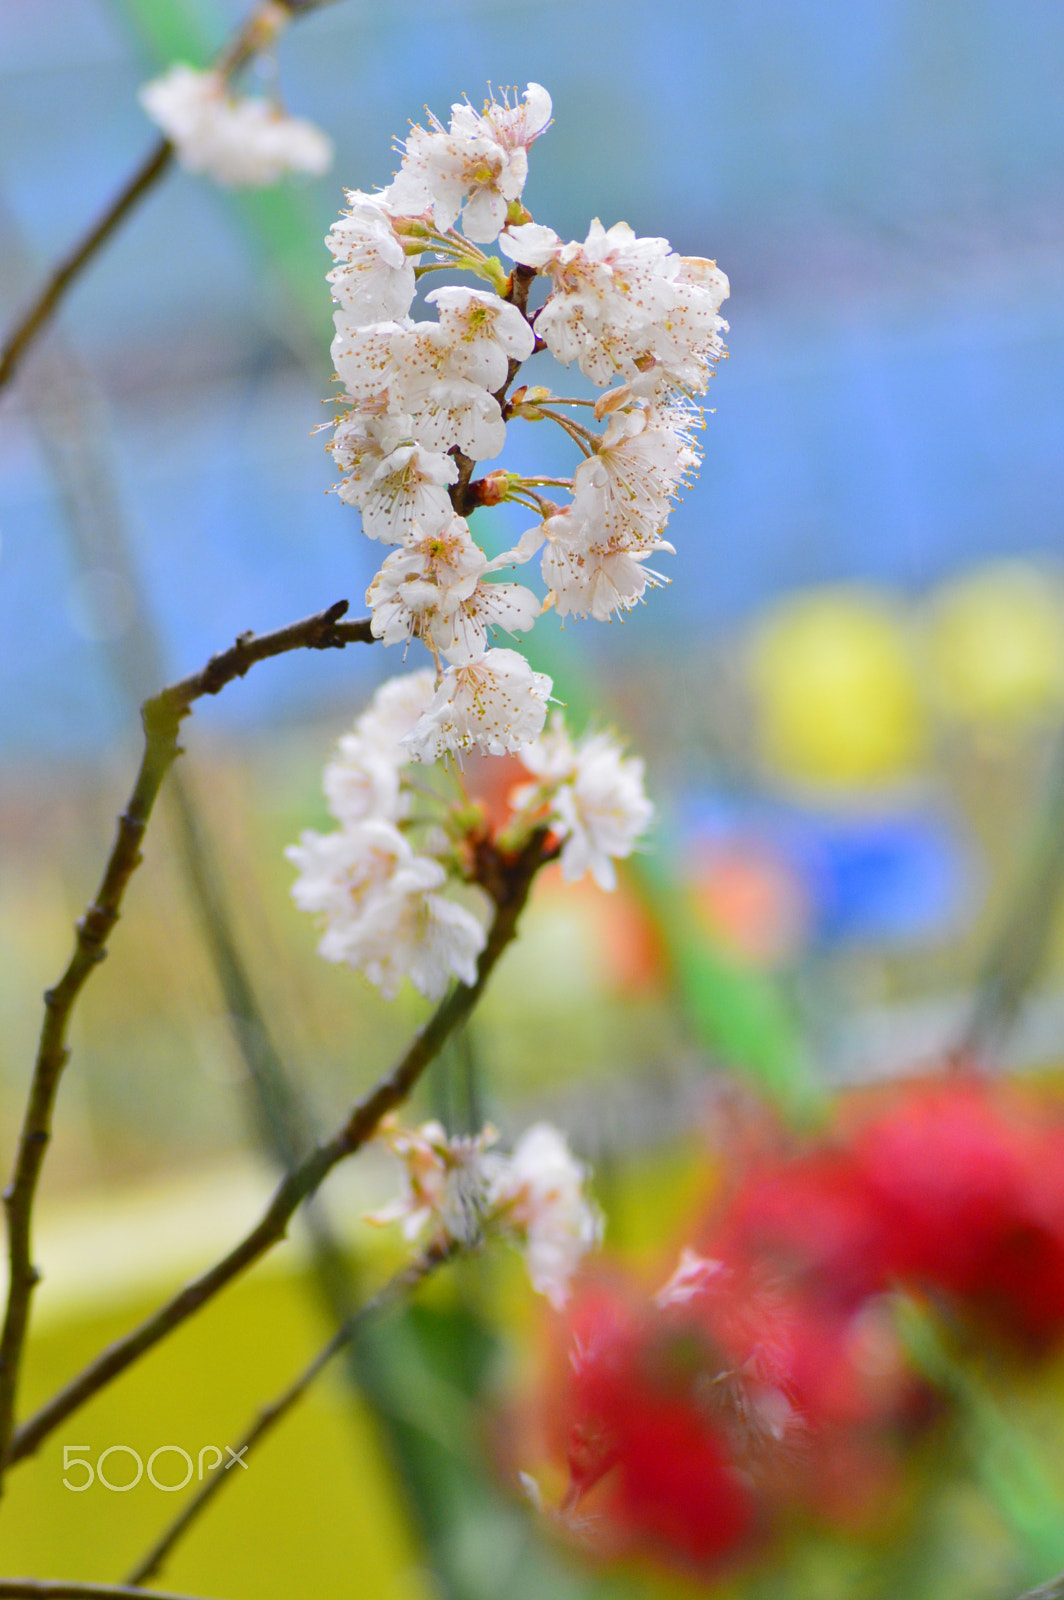 AF Zoom-Nikkor 70-300mm f/4-5.6D ED sample photo. Spring flowers photography